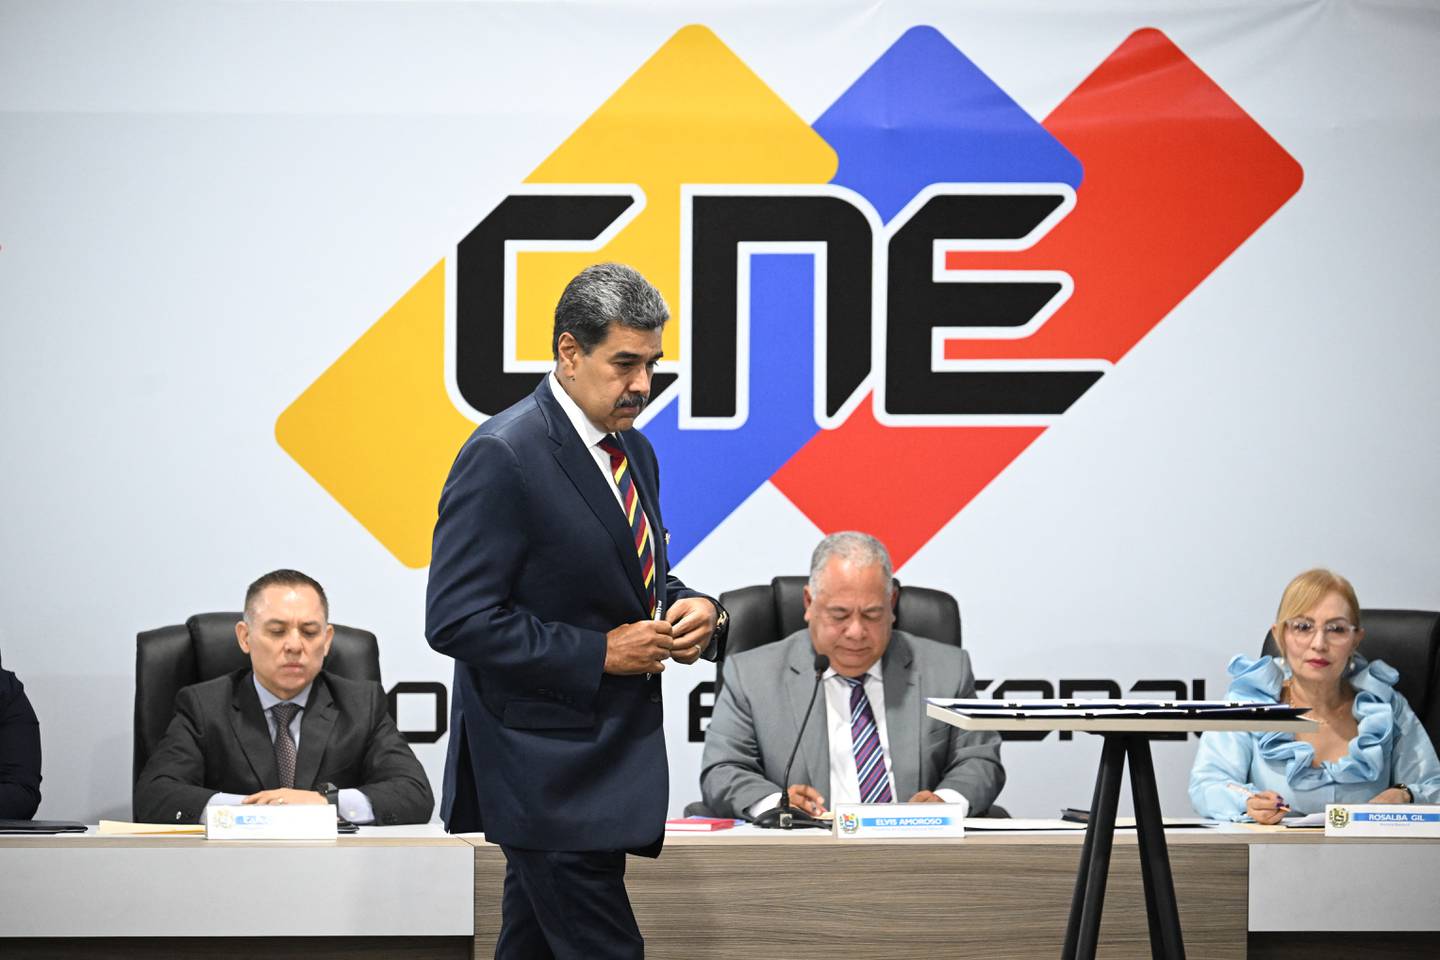 Nicolás Maduro, junto con ocho de los diez candidatos presidenciales, firmó un documento para respetar los resultados de las elecciones. Este acuerdo fue presentado por el Consejo Nacional Electoral (CNE).